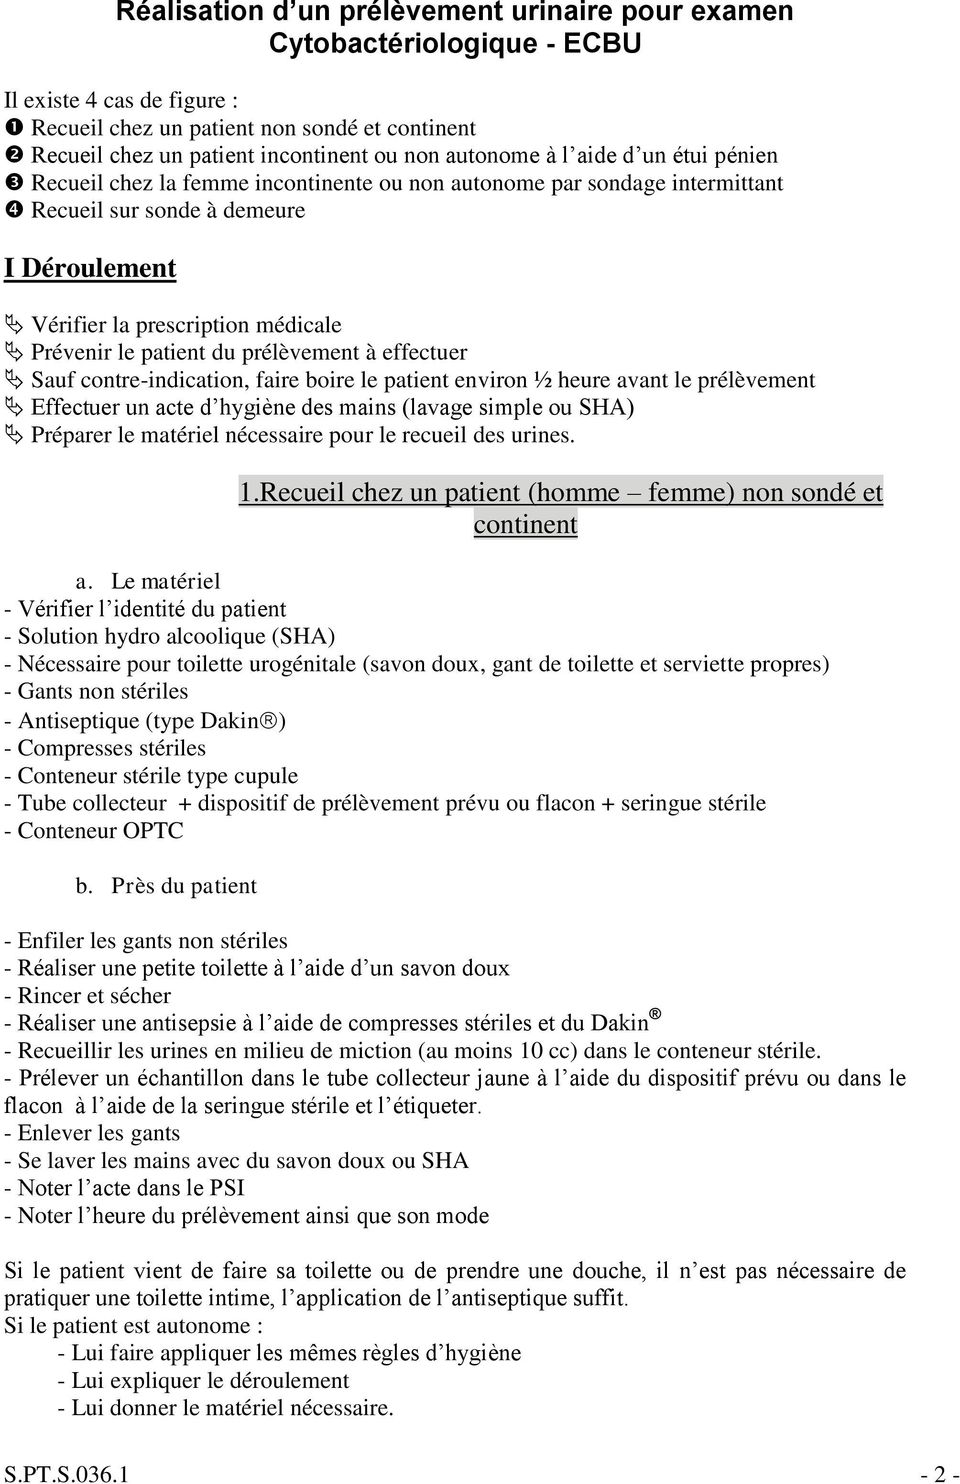 Protocole Réalisation d un prélèvement urinaire pour examen  Cytobactériologique - ECBU - PDF Free Download